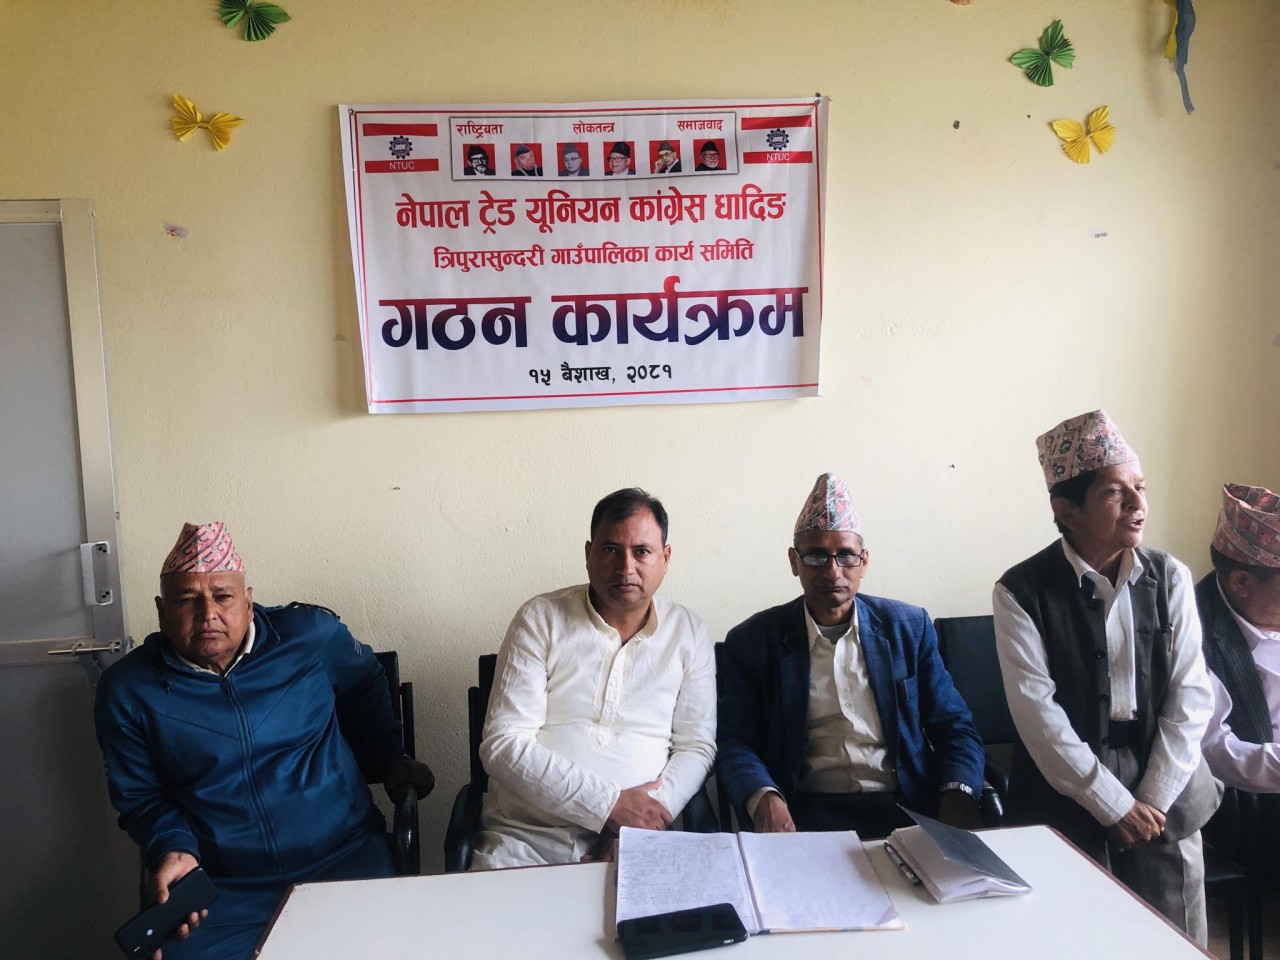 नेपाल ट्रेड युनियन कांग्रेस त्रिपुरासुन्दरी गाउँपालिका कार्यसमिति गठन